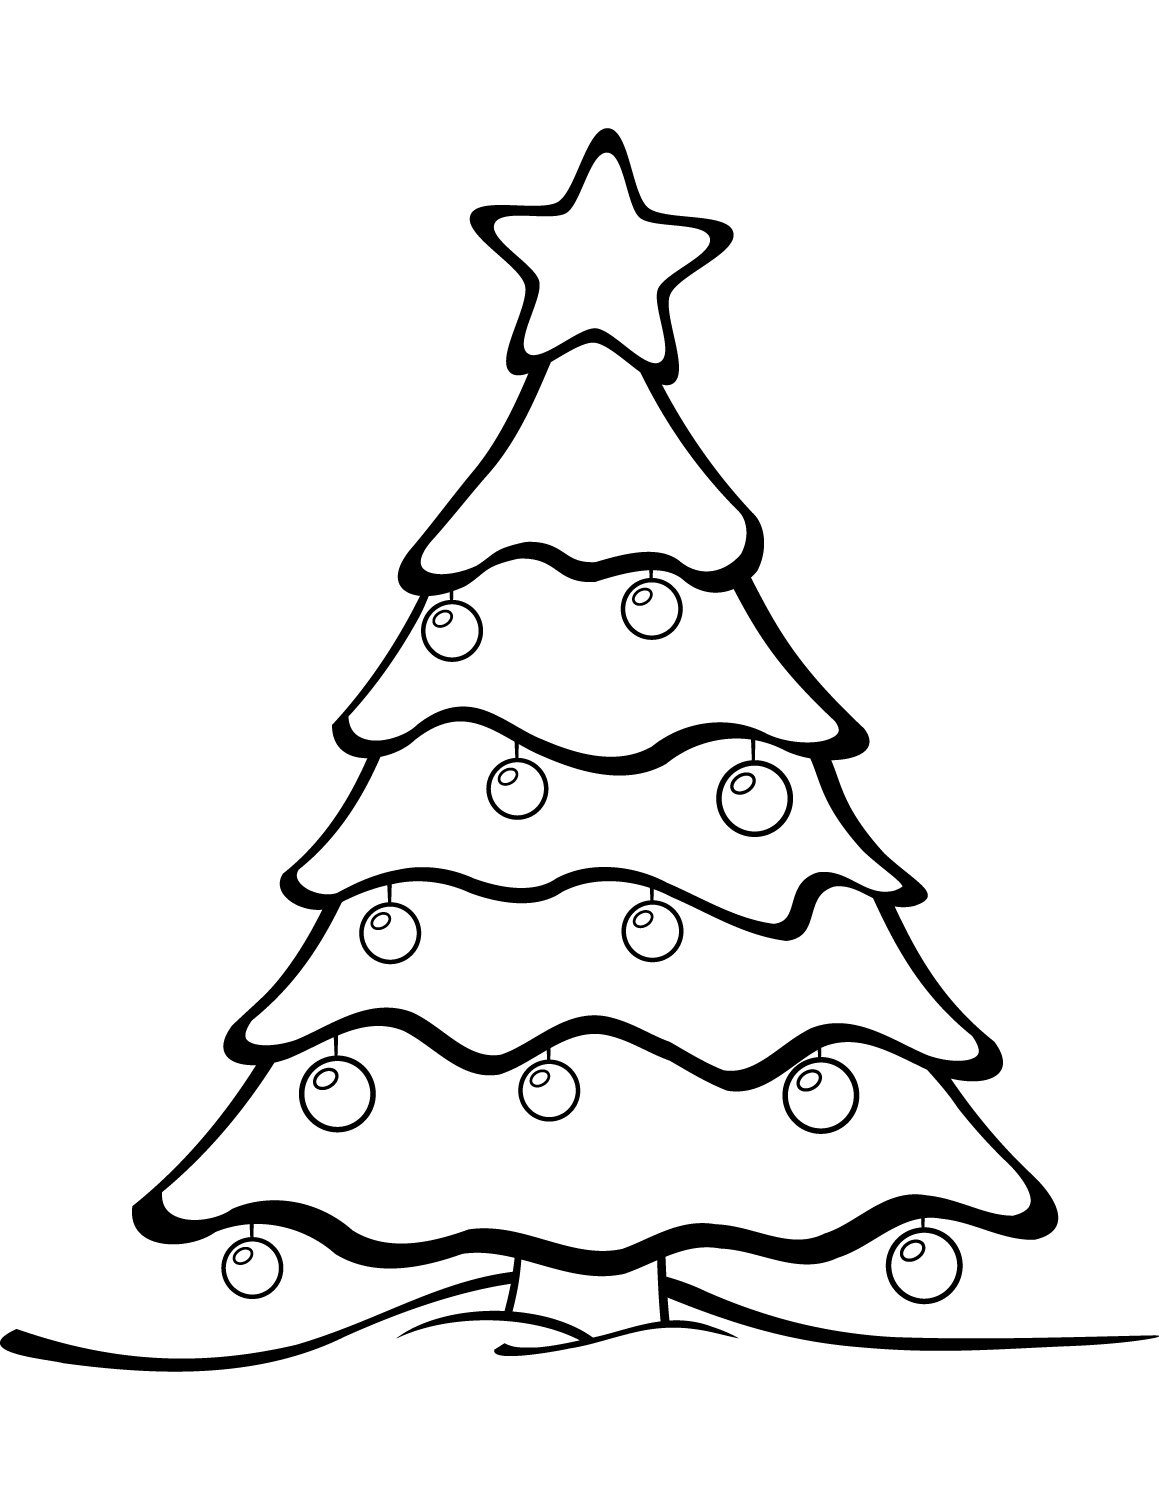 简画圣诞树